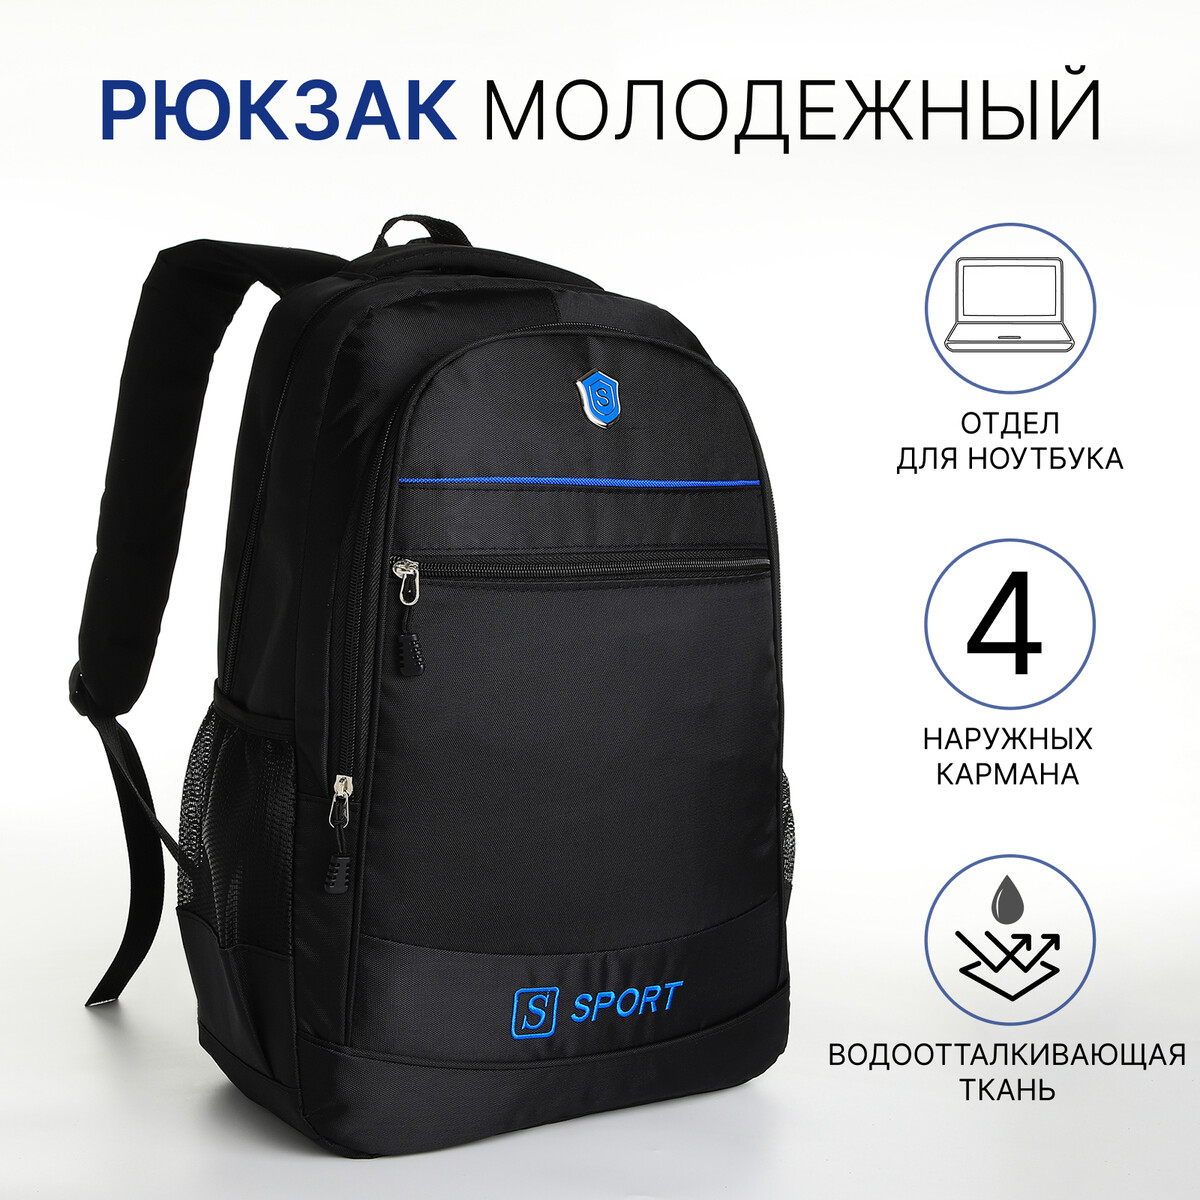 Рюкзак молодежный из текстиля на молнии, 4 карманов, цвет черный/синий рюкзак туристический 35 л с увеличением отдел на молнии 5 наружных карманов синий